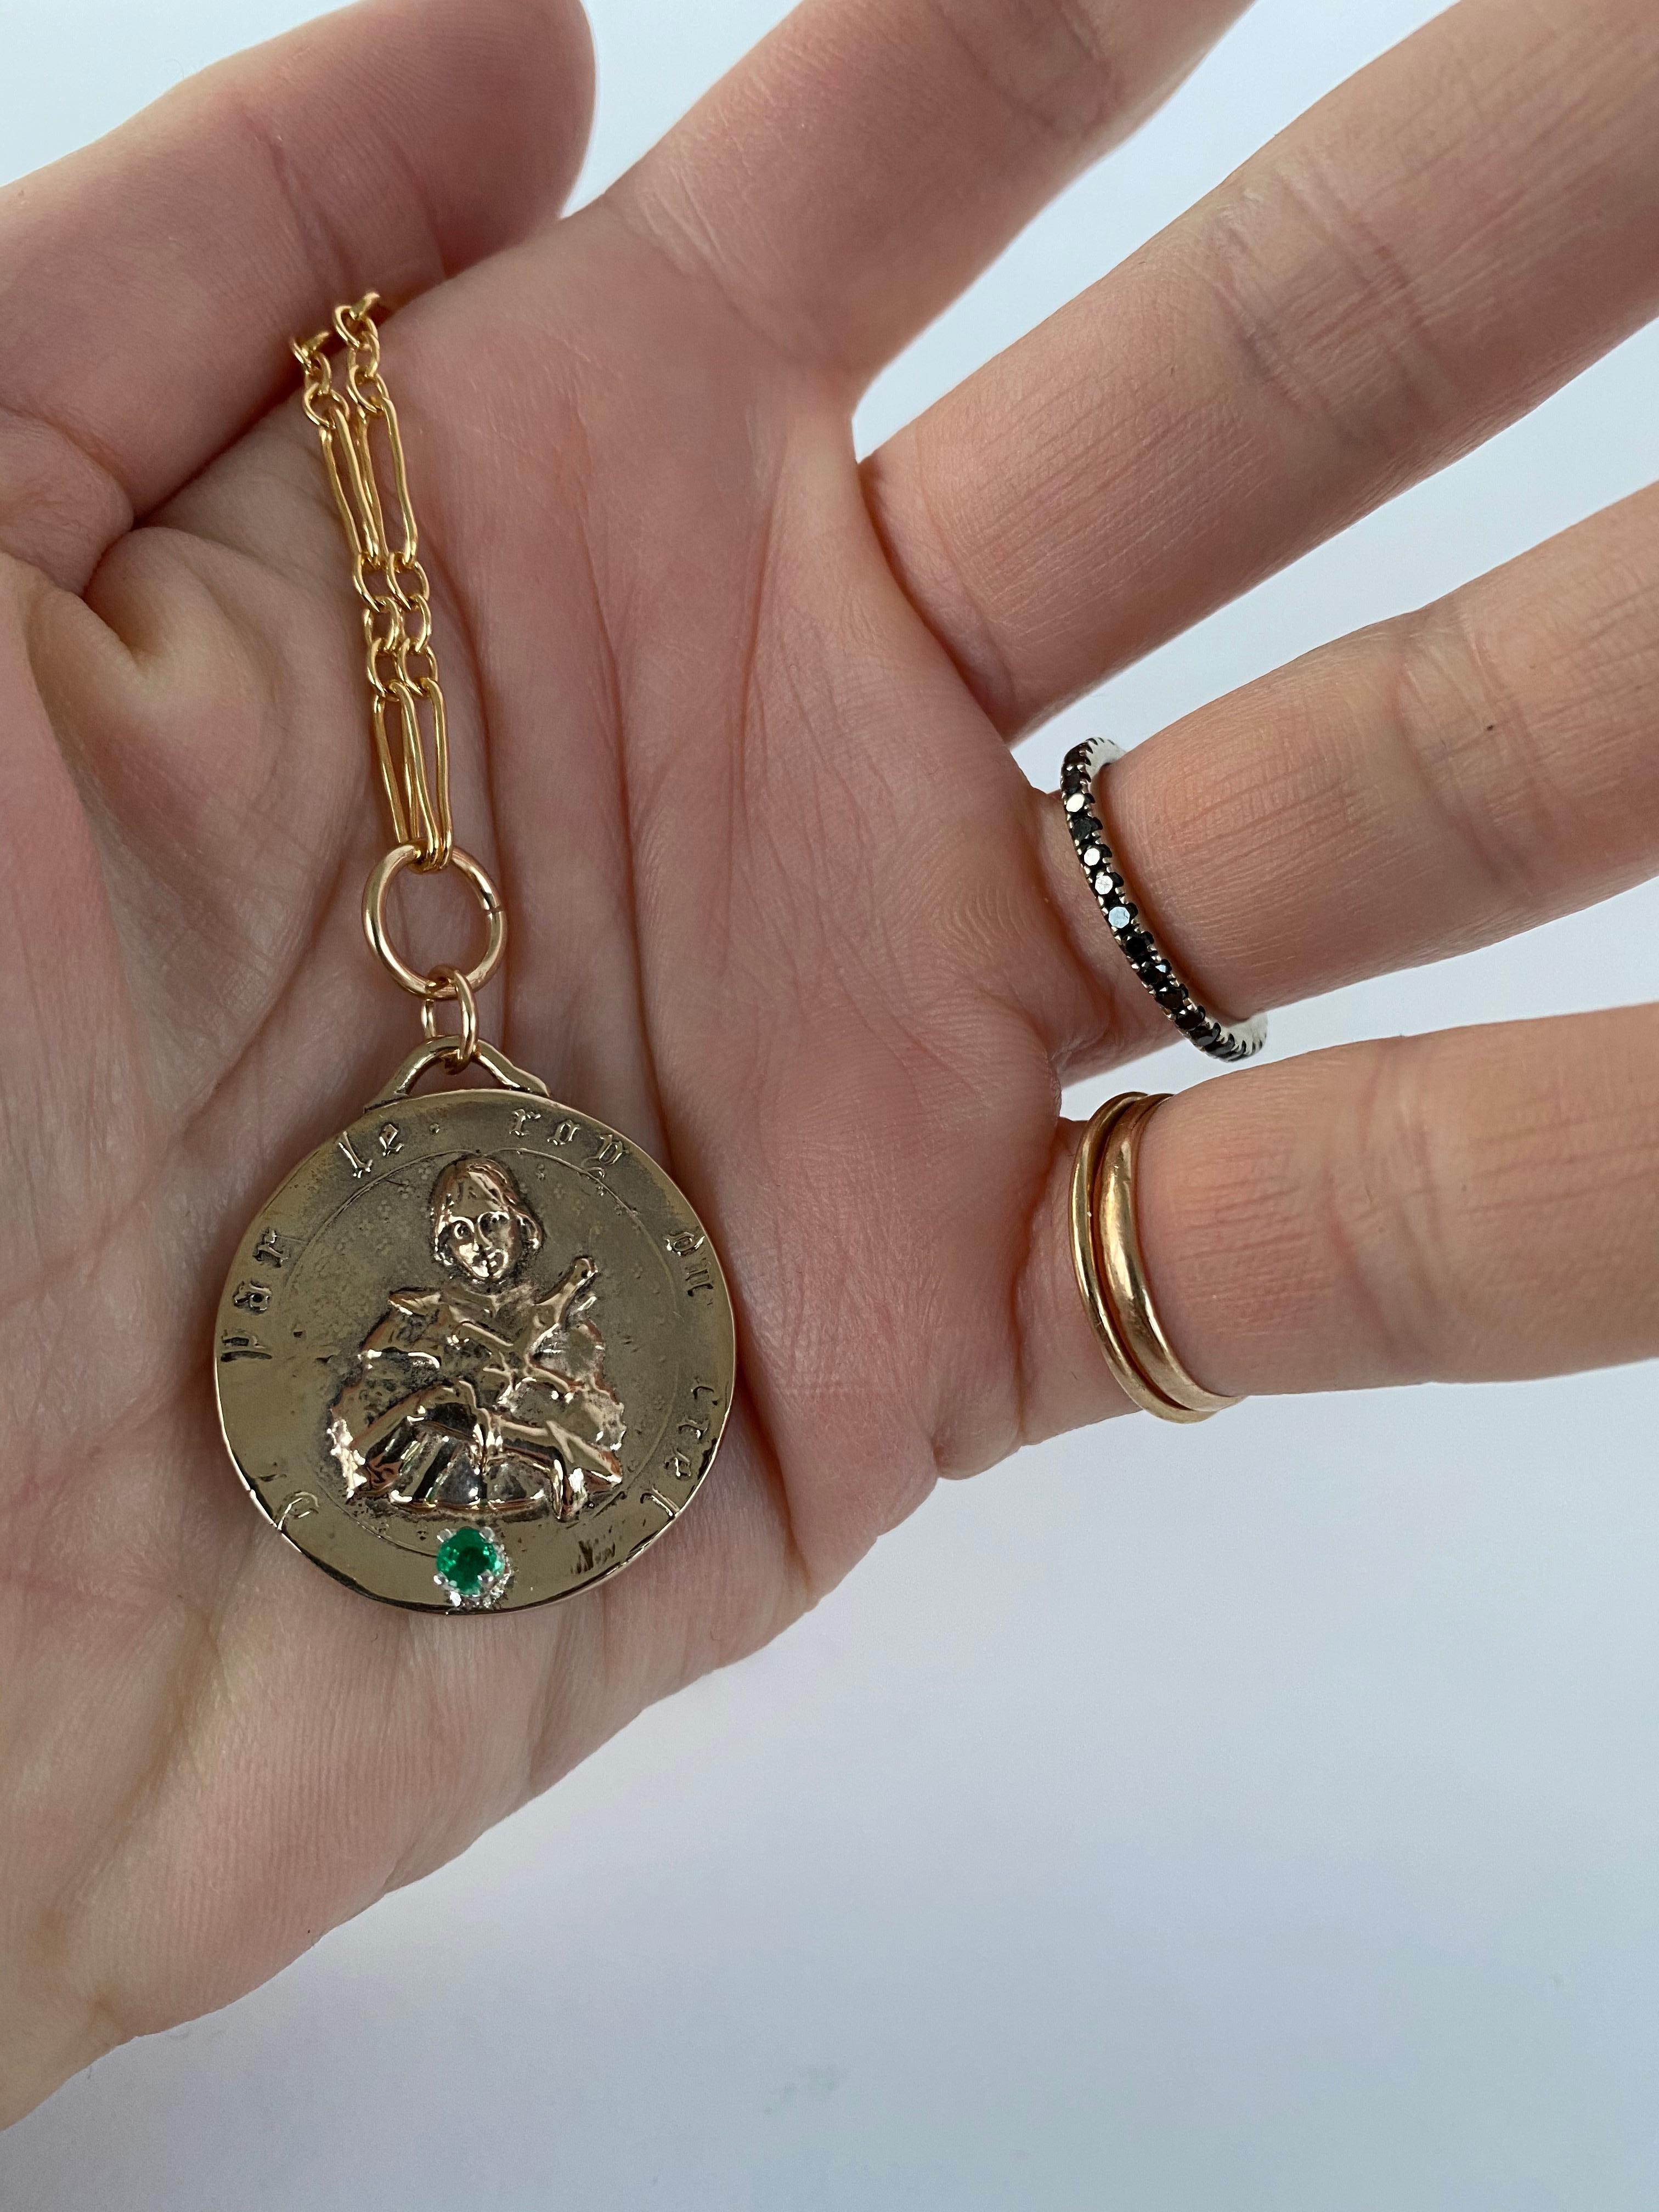 Smaragd auf einer Medaille Anhänger von Jeanne d'Arc, die klobige Kette Halskette ist Gold gefüllt J DAUPHIN

Exklusives Stück mit Jeanne d'Arc Medaille Runder Münzanhänger in Bronze mit einem Smaragd und einer goldfarbenen Kette. Die Halskette ist